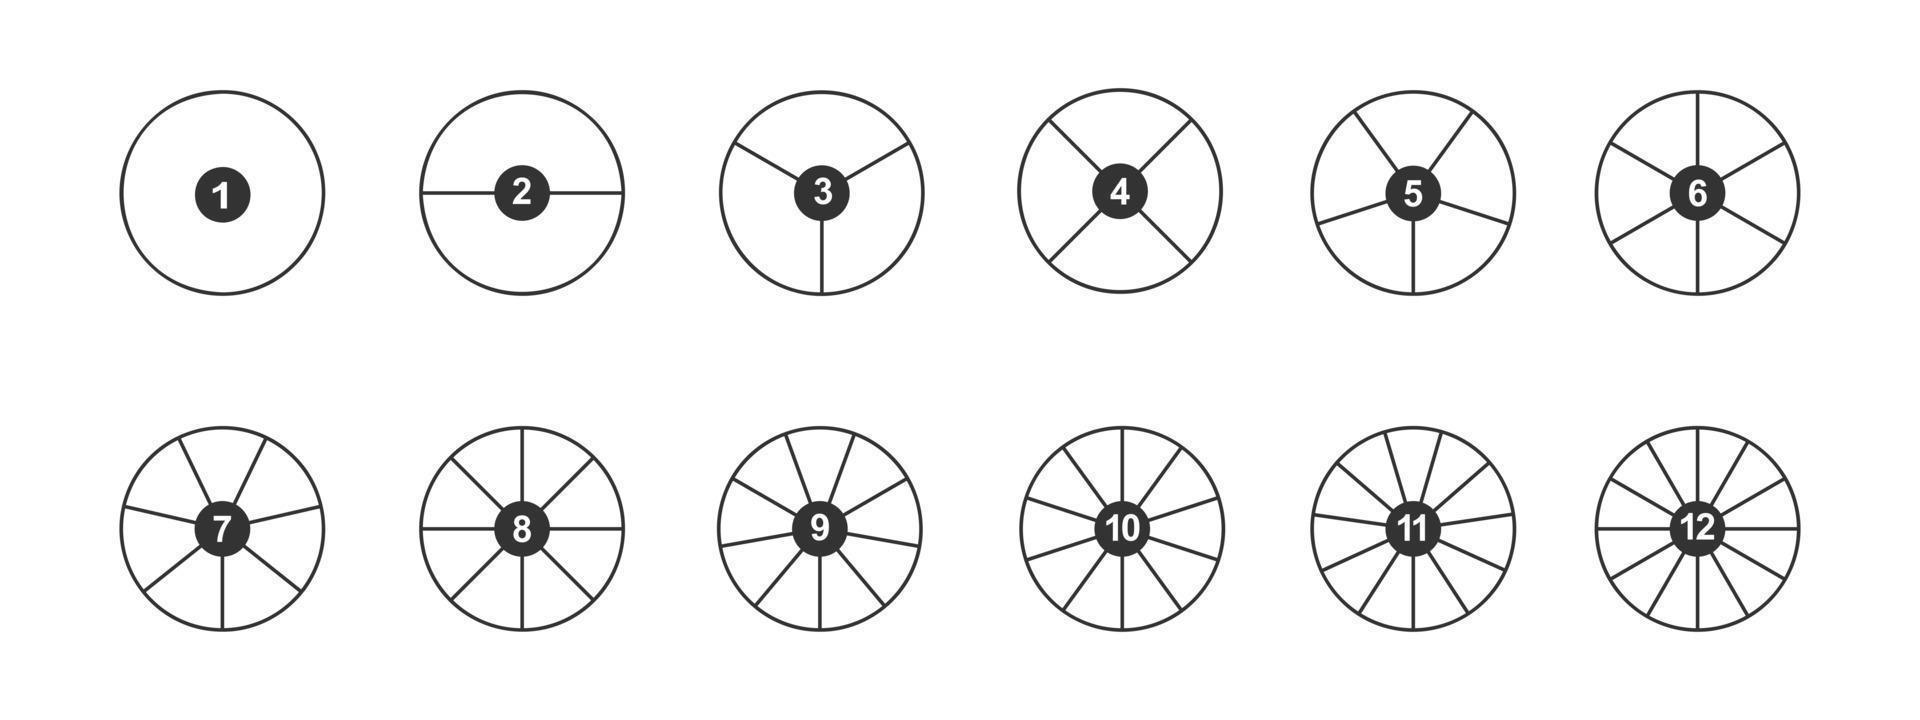 cirklar dividerat i segment med tal från 1 till 12. översikt runda former skära i likvärdig delar. enkel grafisk paj eller munk Diagram exempel vektor